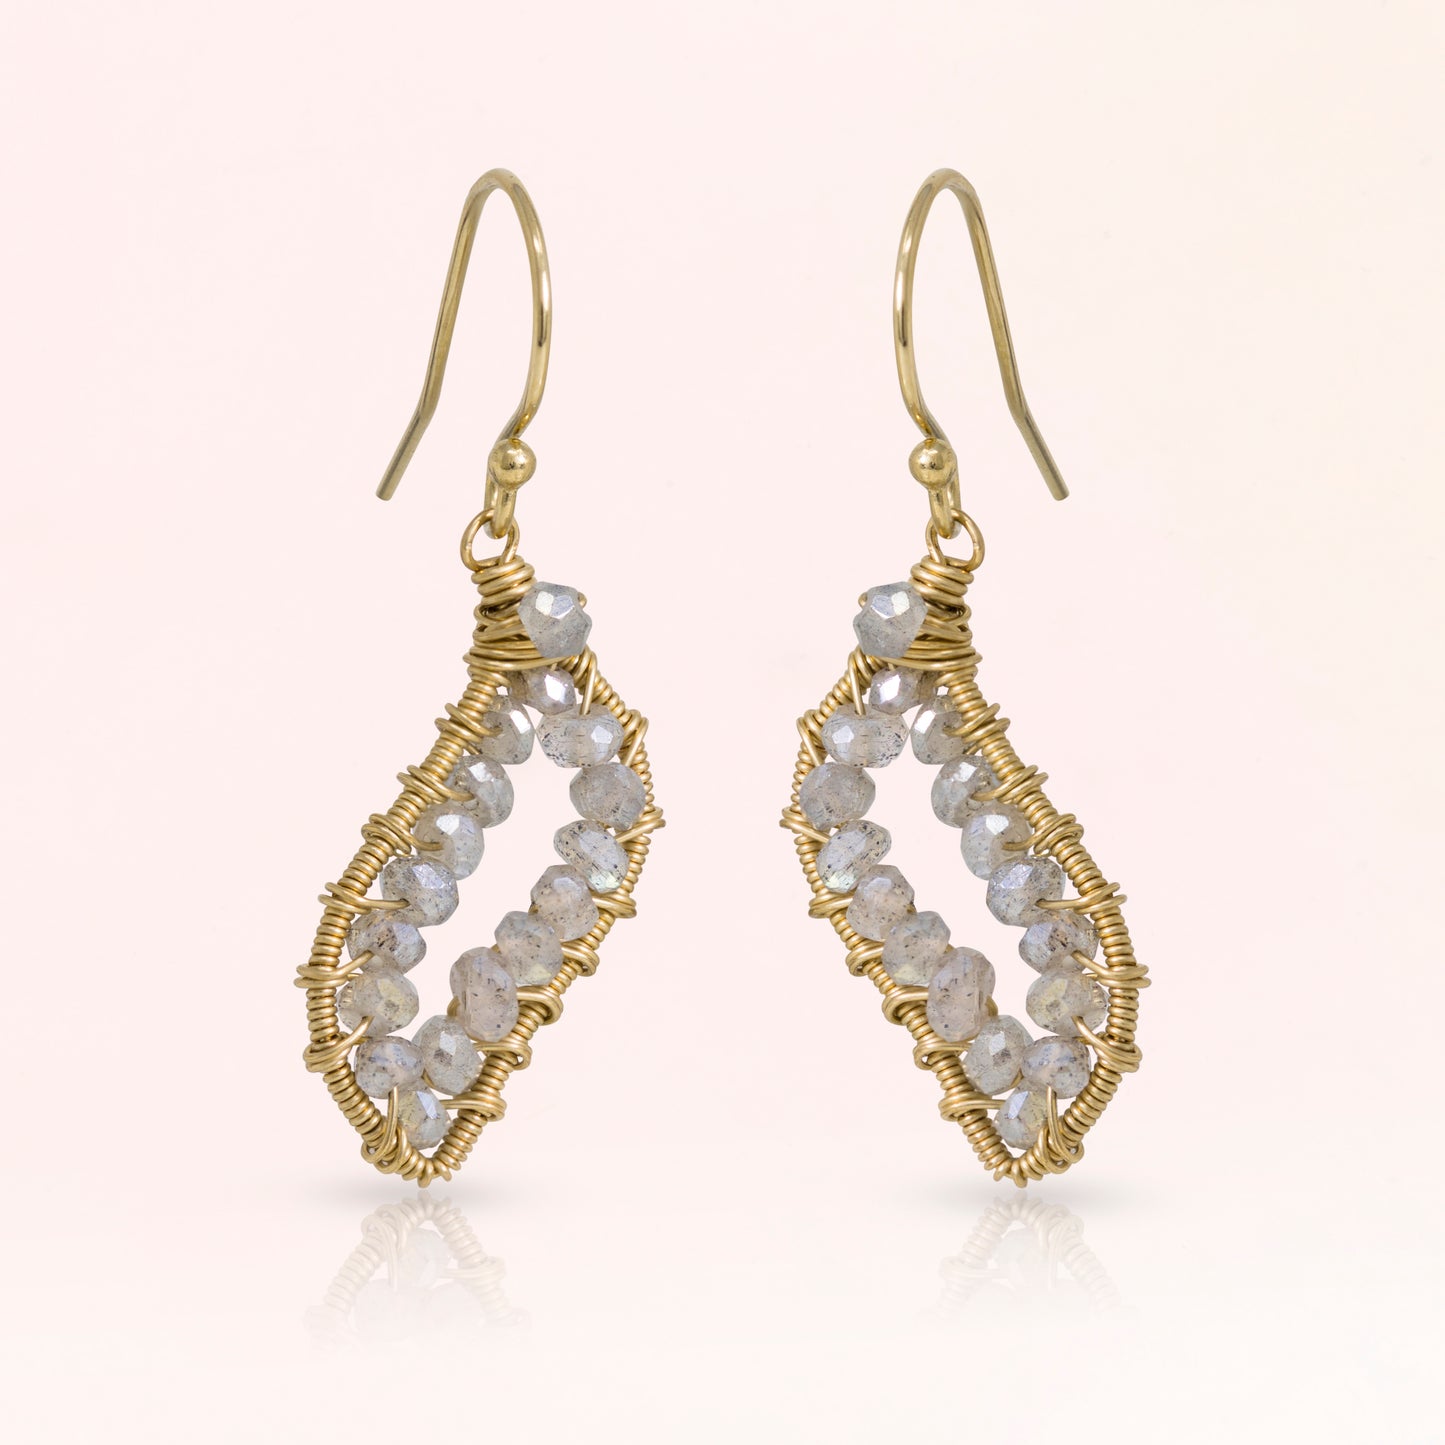 Gemstone Geode Earrings